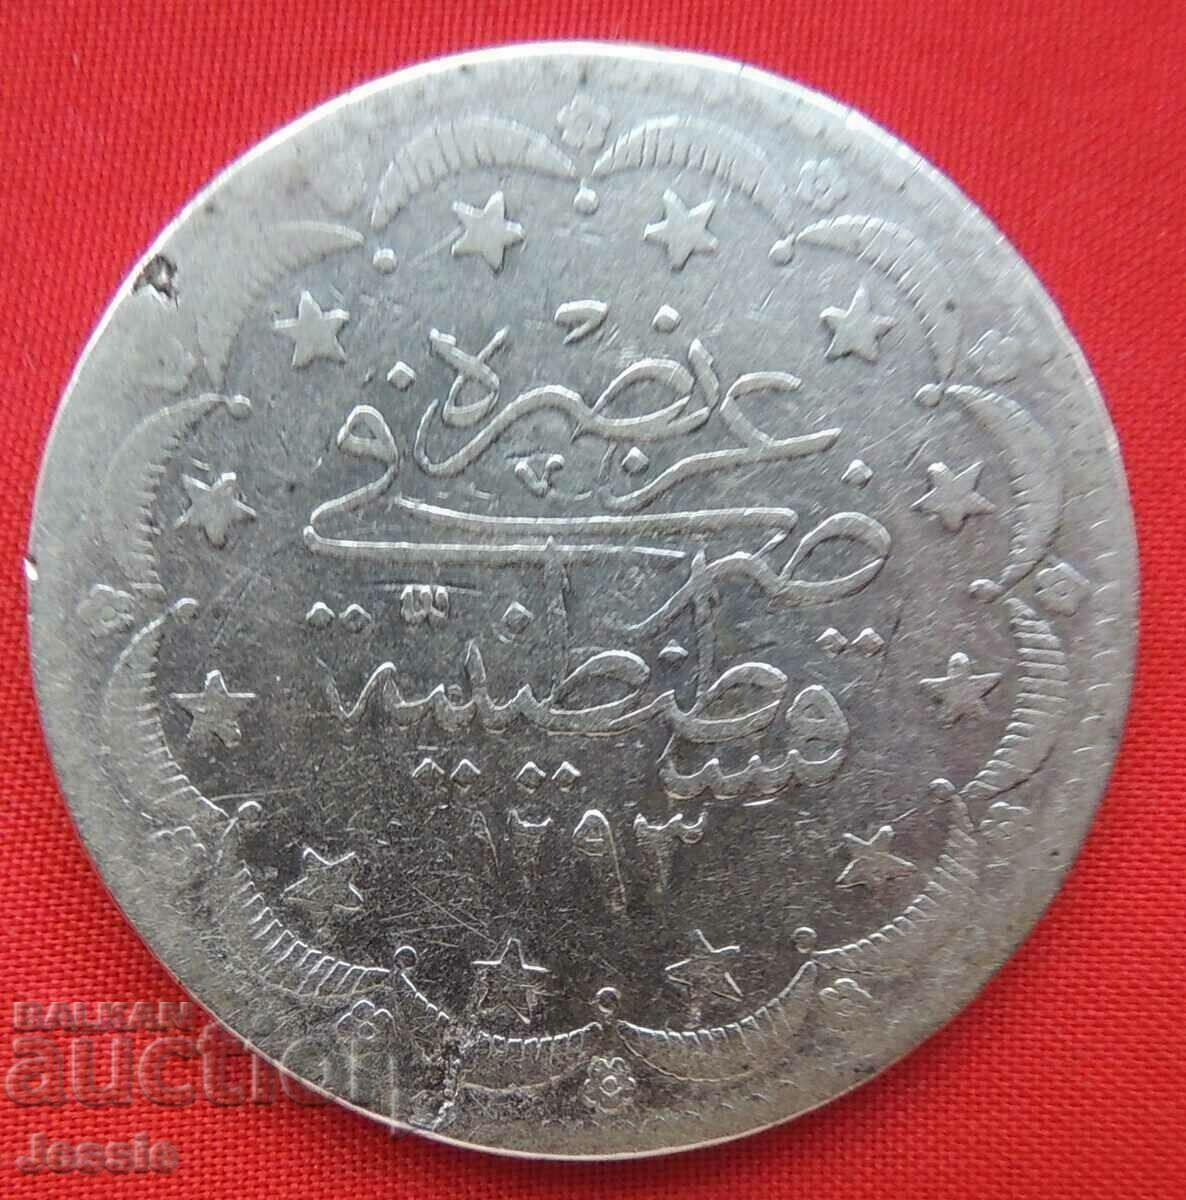 20 kurusha Turcia AH 1293 / 2 - argint #2